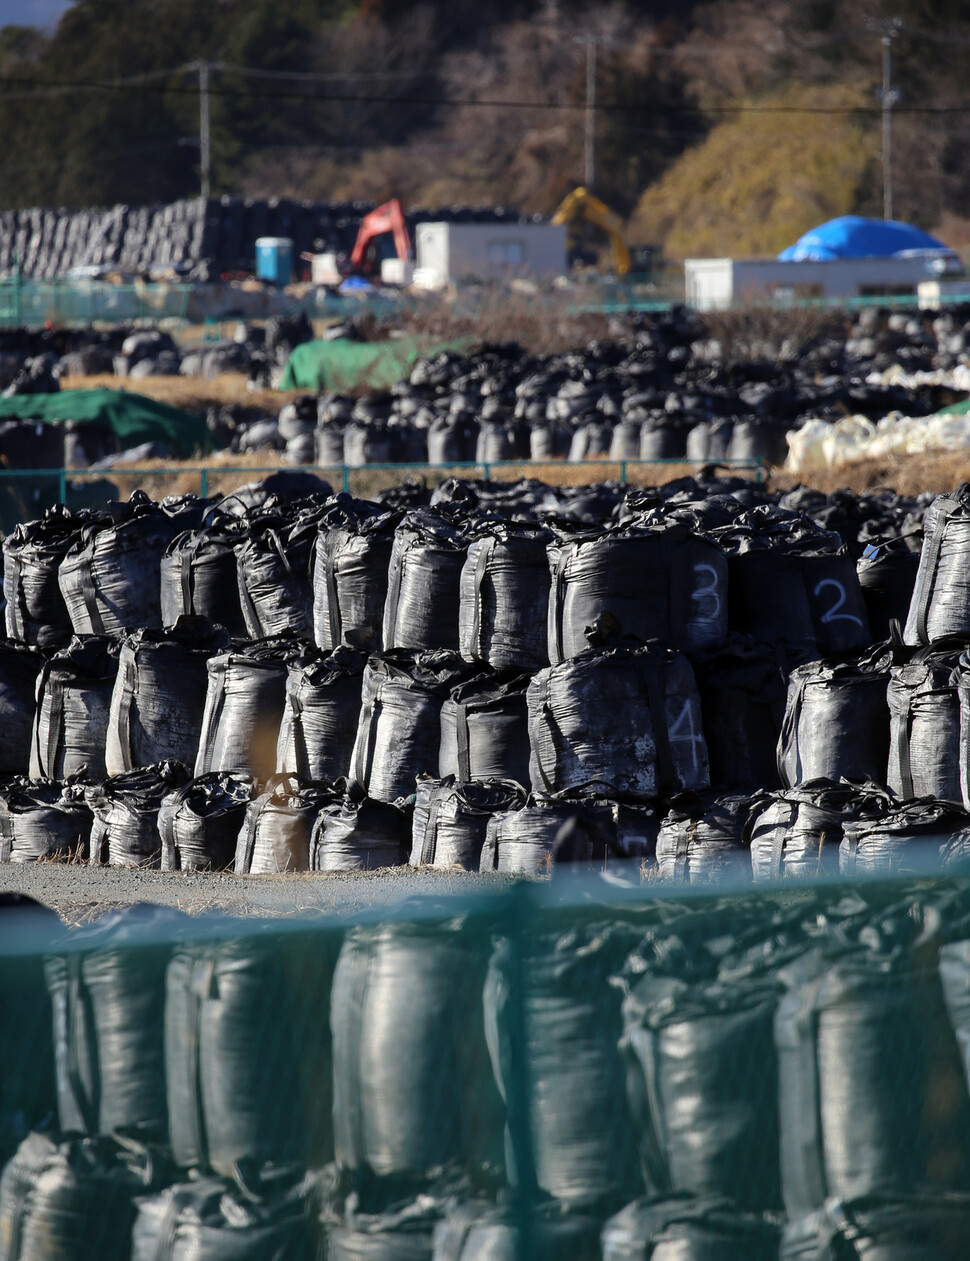 후쿠시마 원전 사고 10주년을 앞둔 지난 3월 일본 후쿠시마현 도미오카마치의 ‘귀환곤란’(歸還困難) 구역에 오염제거 작업으로 수거한 토양과 풀 등을 담은 커다란 검은 자루가 임시 보관소에 쌓여 있다. 연합뉴스